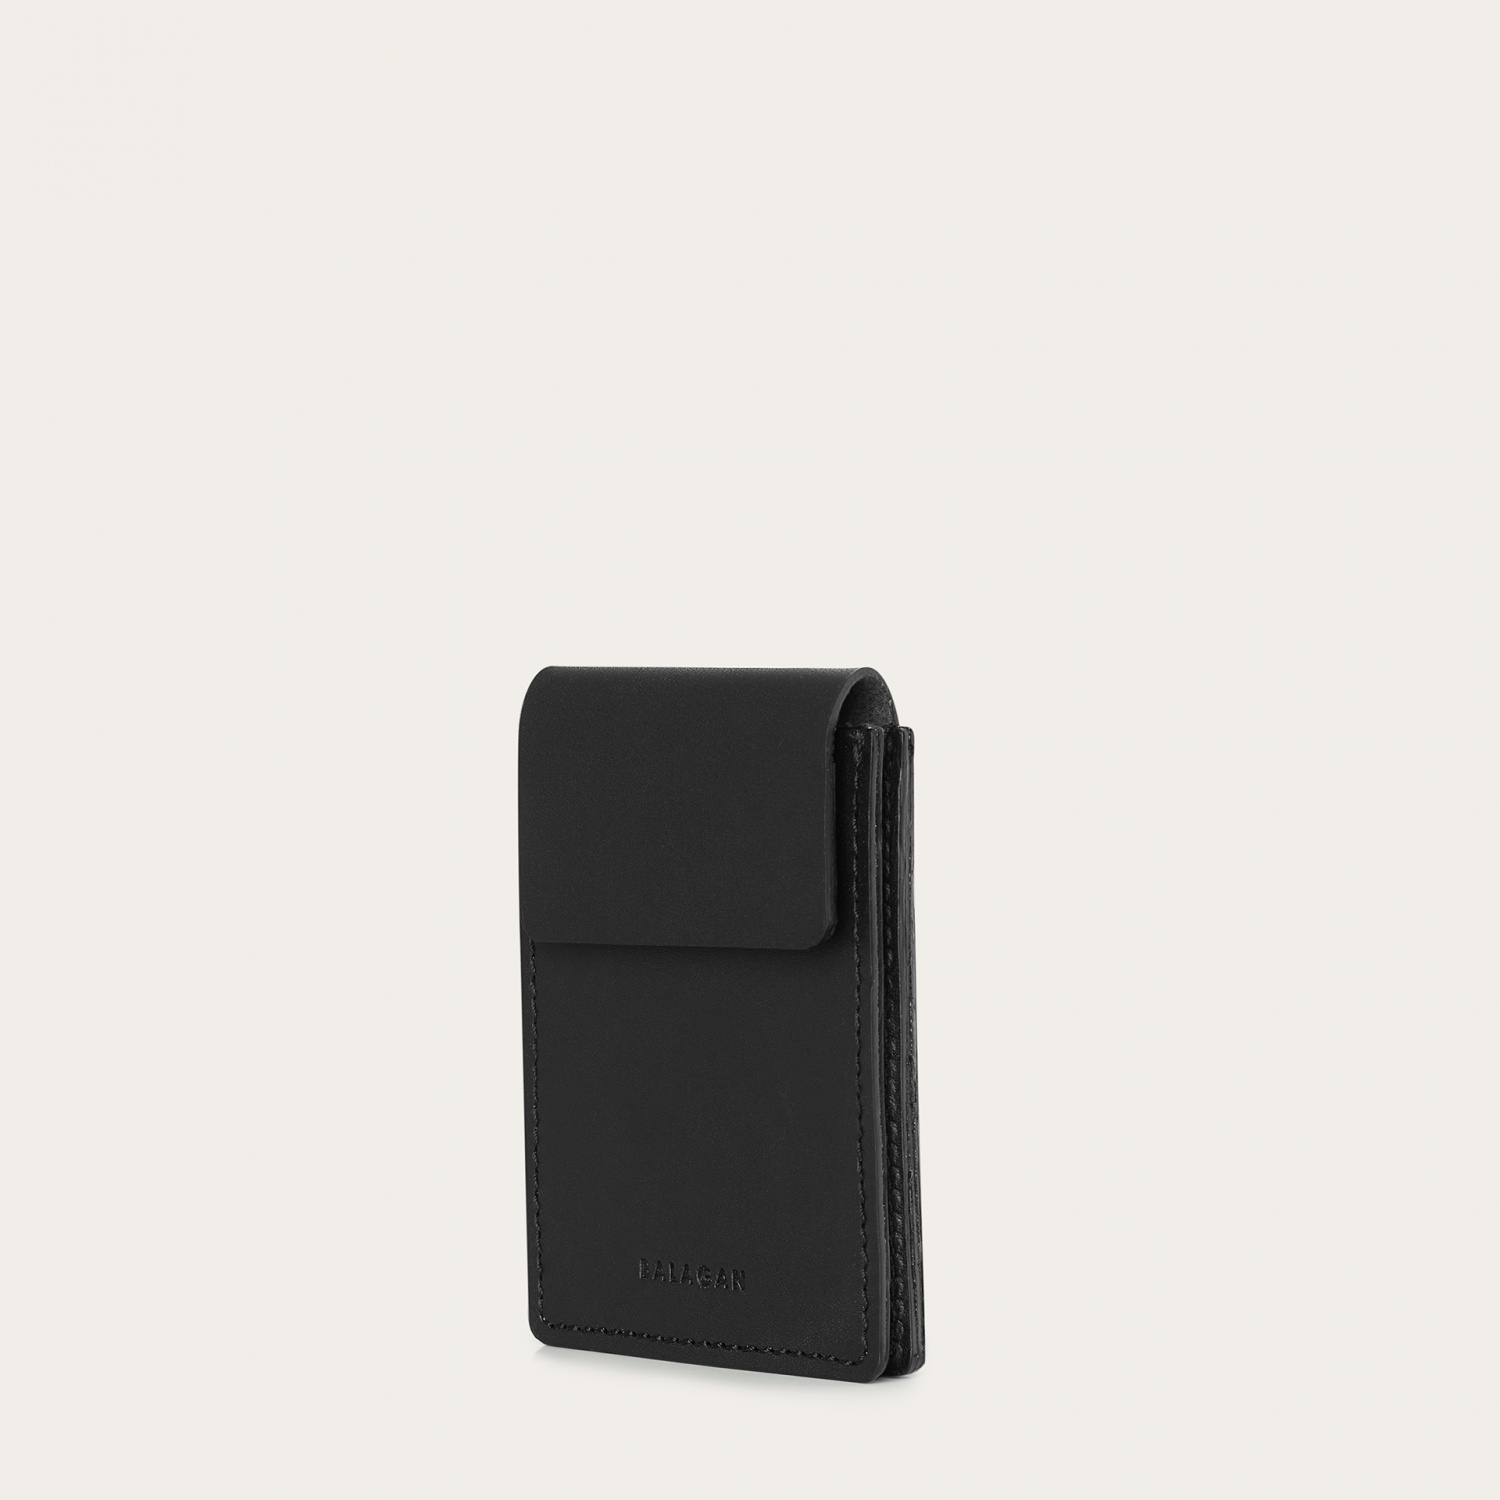  Anahi wallet, black-1 